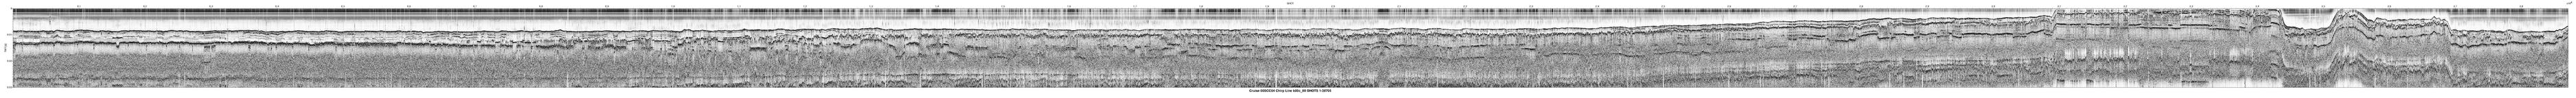 00SCC04 b00c_88 seismic profile image